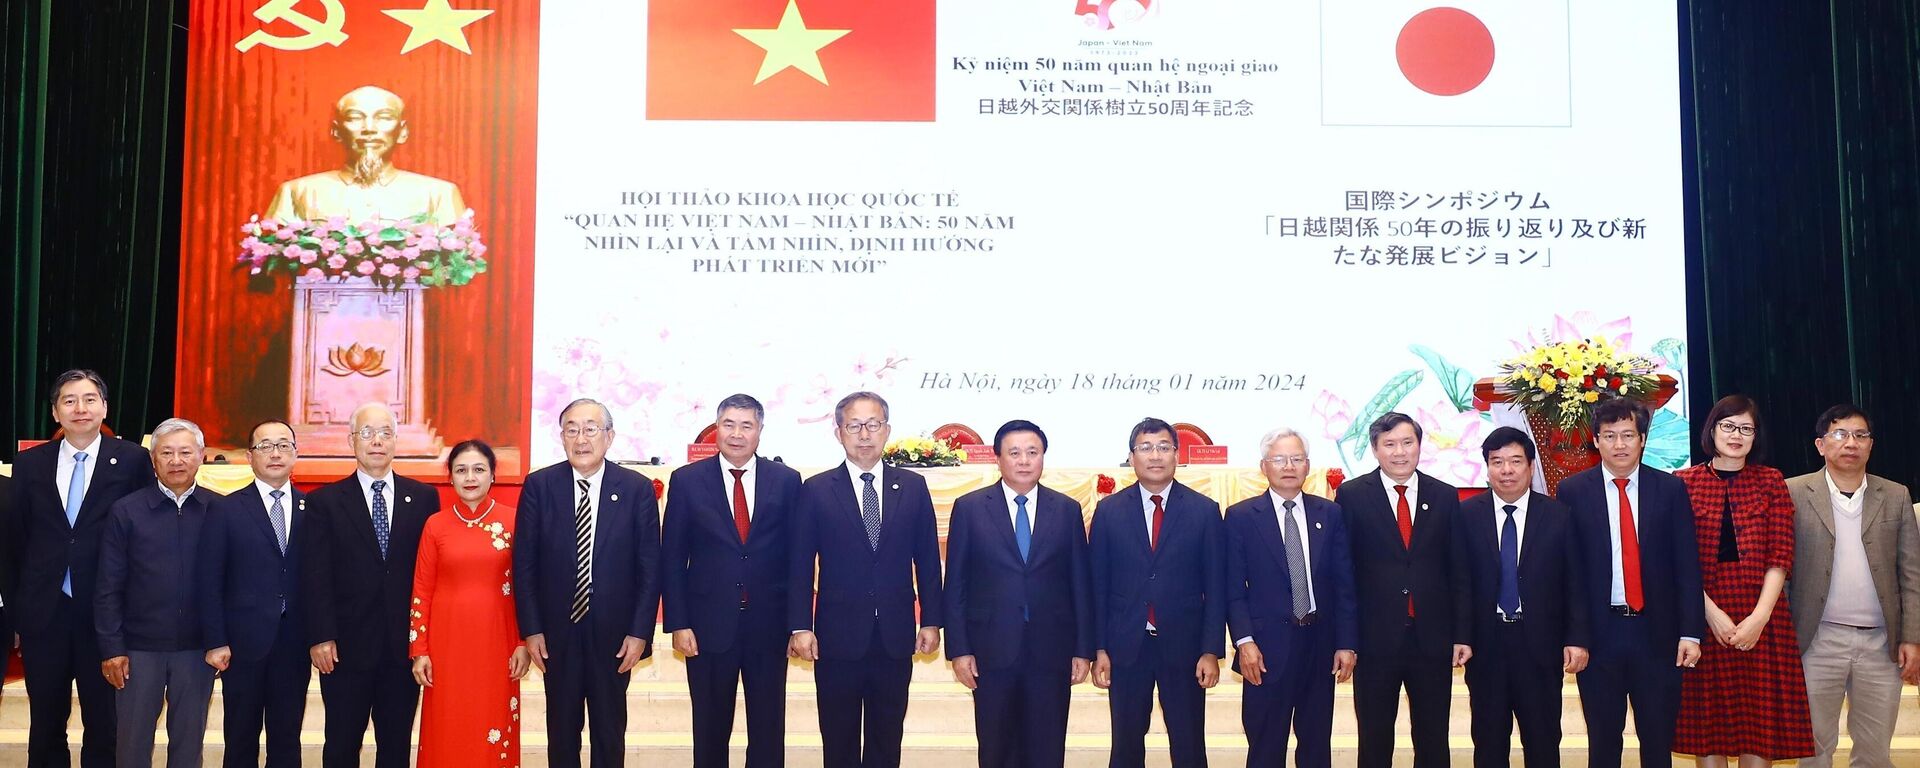 Hội thảo khoa học quốc tế Quan hệ Việt Nam - Nhật Bản: 50 năm nhìn lại và tầm nhìn, định hướng phát triển mới - Sputnik Việt Nam, 1920, 18.01.2024